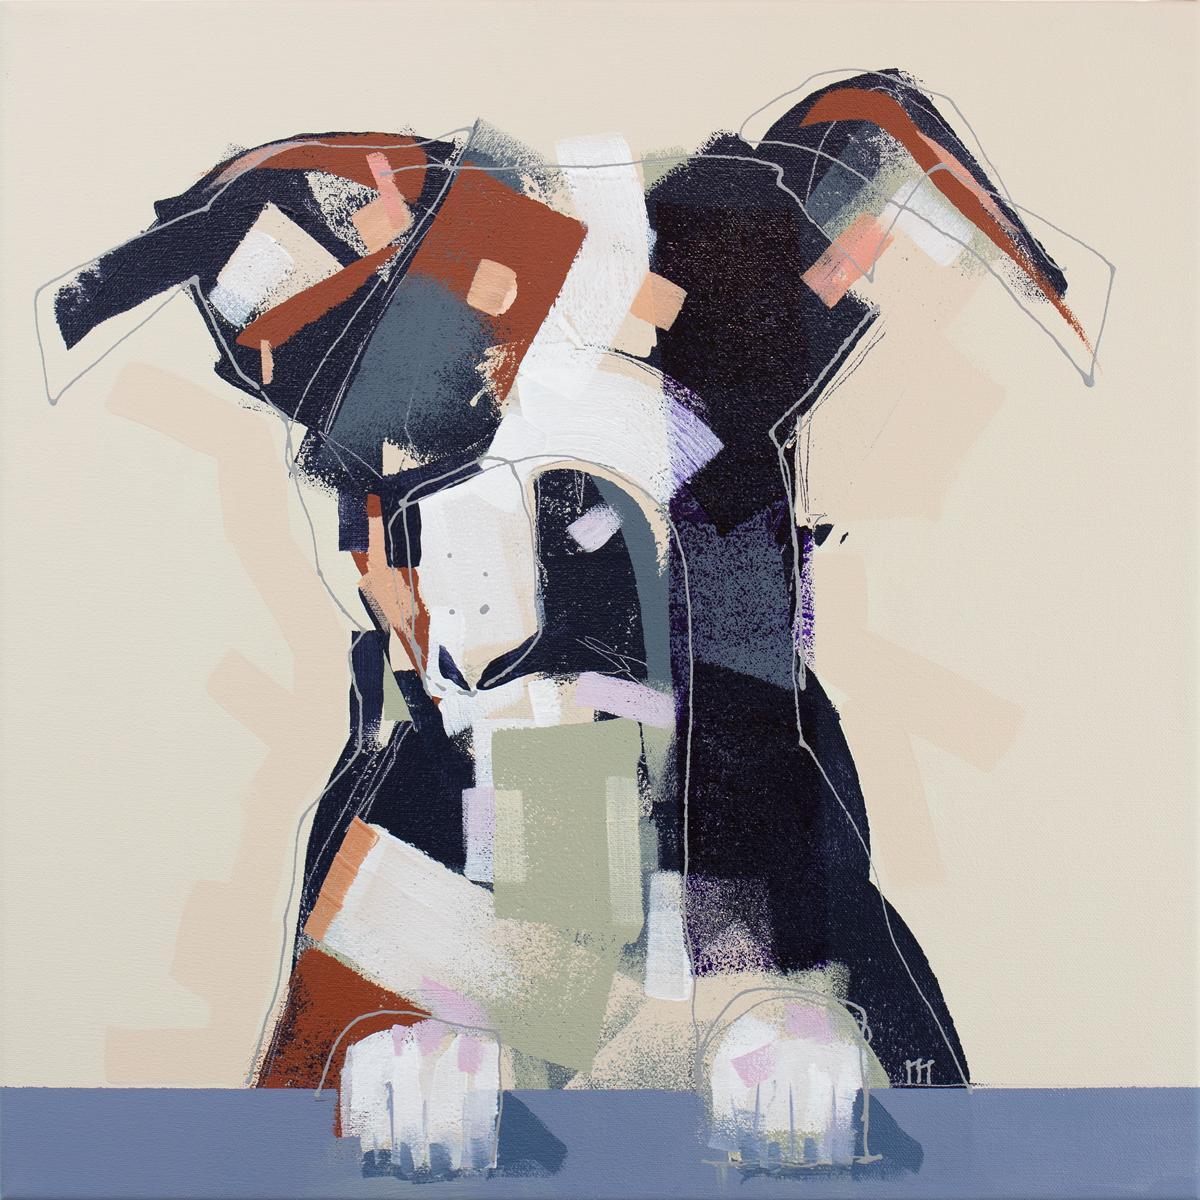 Cette peinture abstraite d'un chien réalisée par Russell Miyaki se caractérise par un style libre et énergique et une palette neutre et chaleureuse. L'artiste superpose de larges coups de pinceau et de fines lignes tourbillonnantes pour créer la